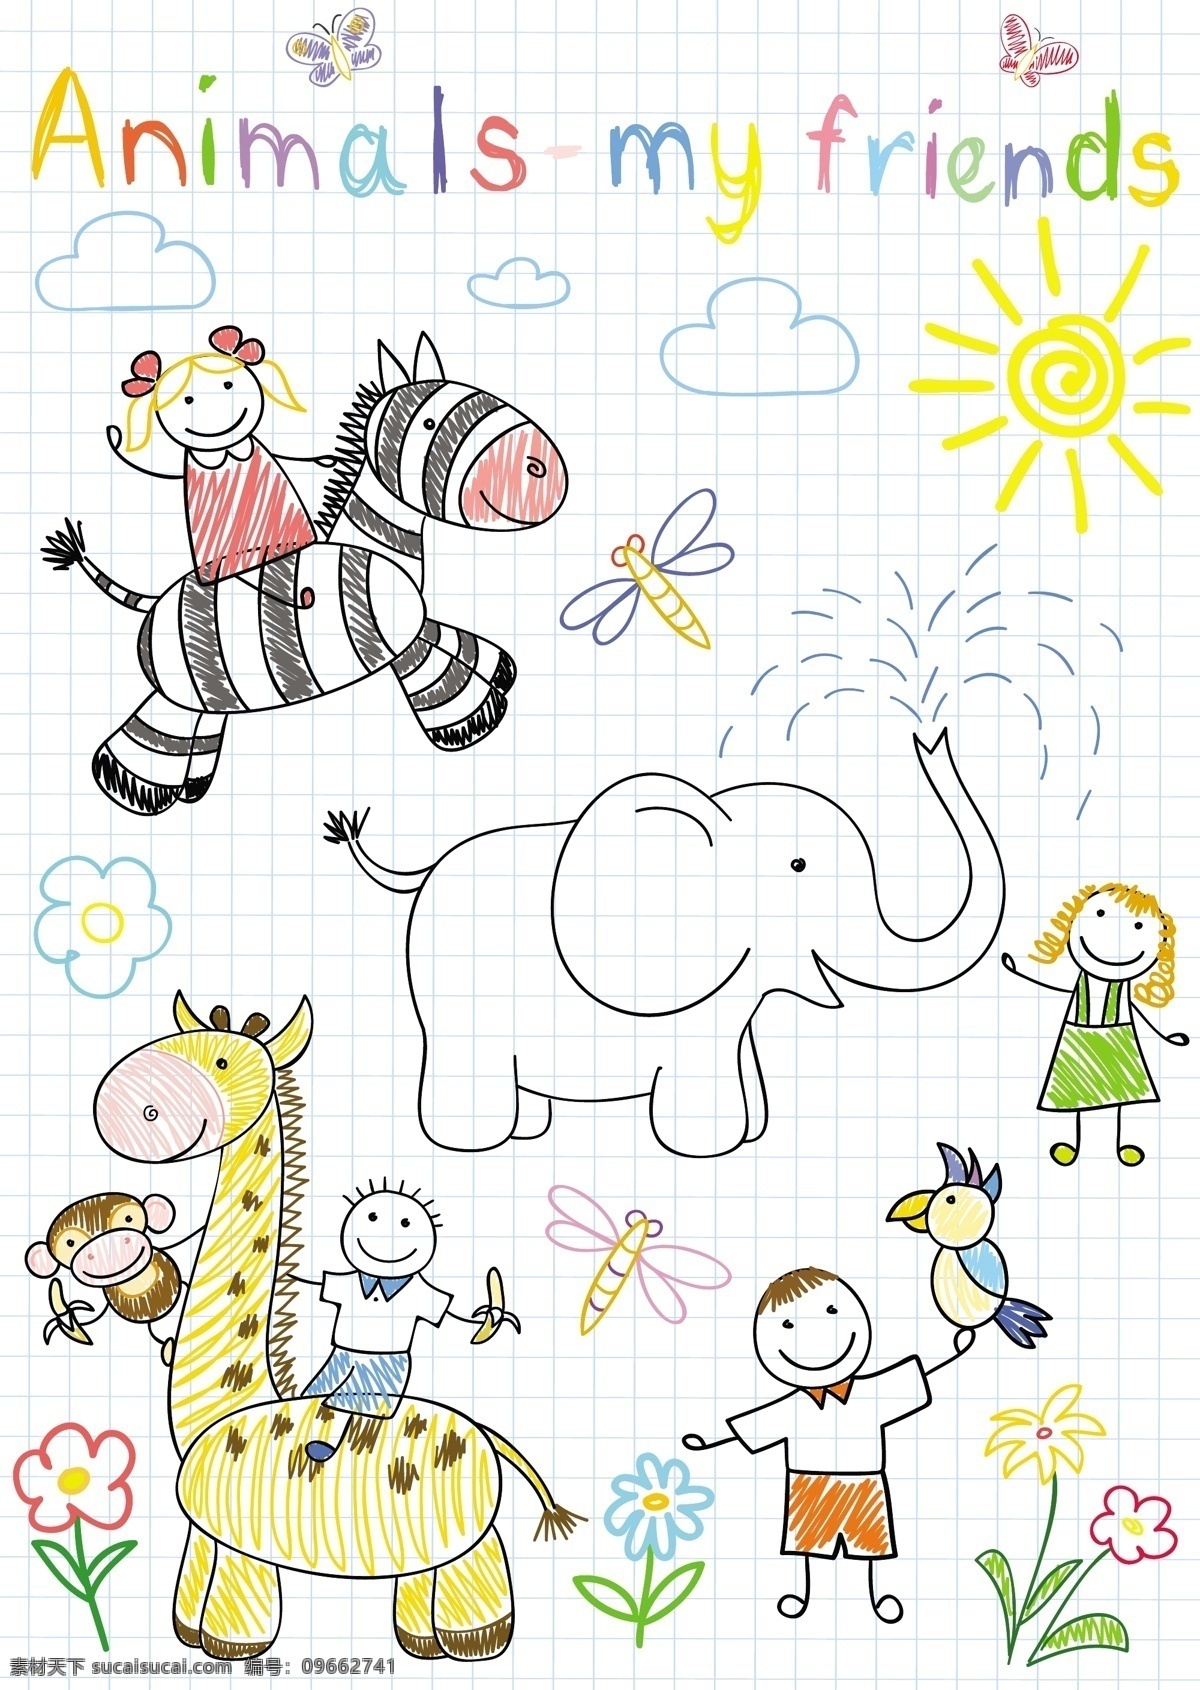 儿童卡通插画 矢量 卡通 插画 线稿 动物 人物 儿童 手绘 可爱 抽象 大象 卡通设计